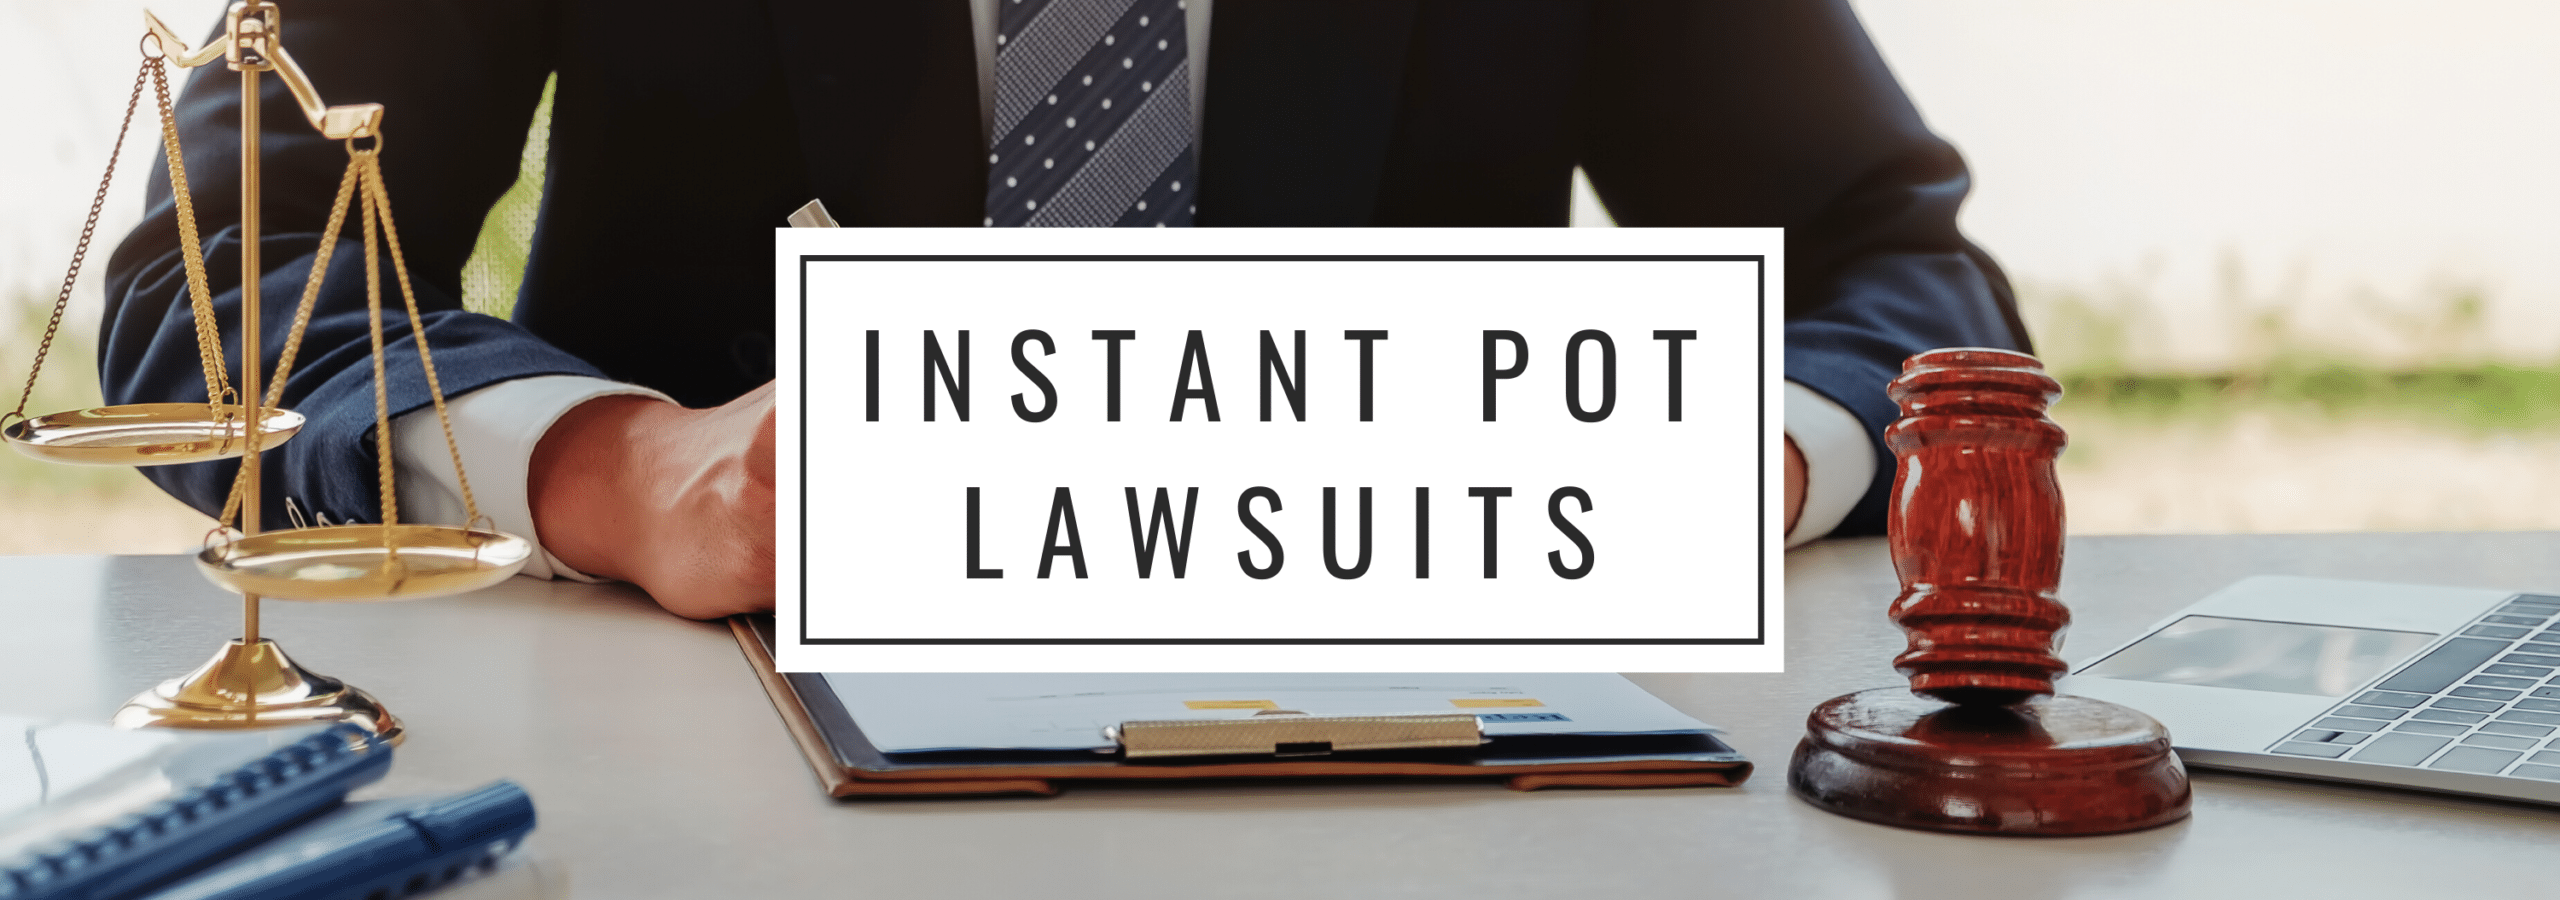 Instant Pot Lawsuits